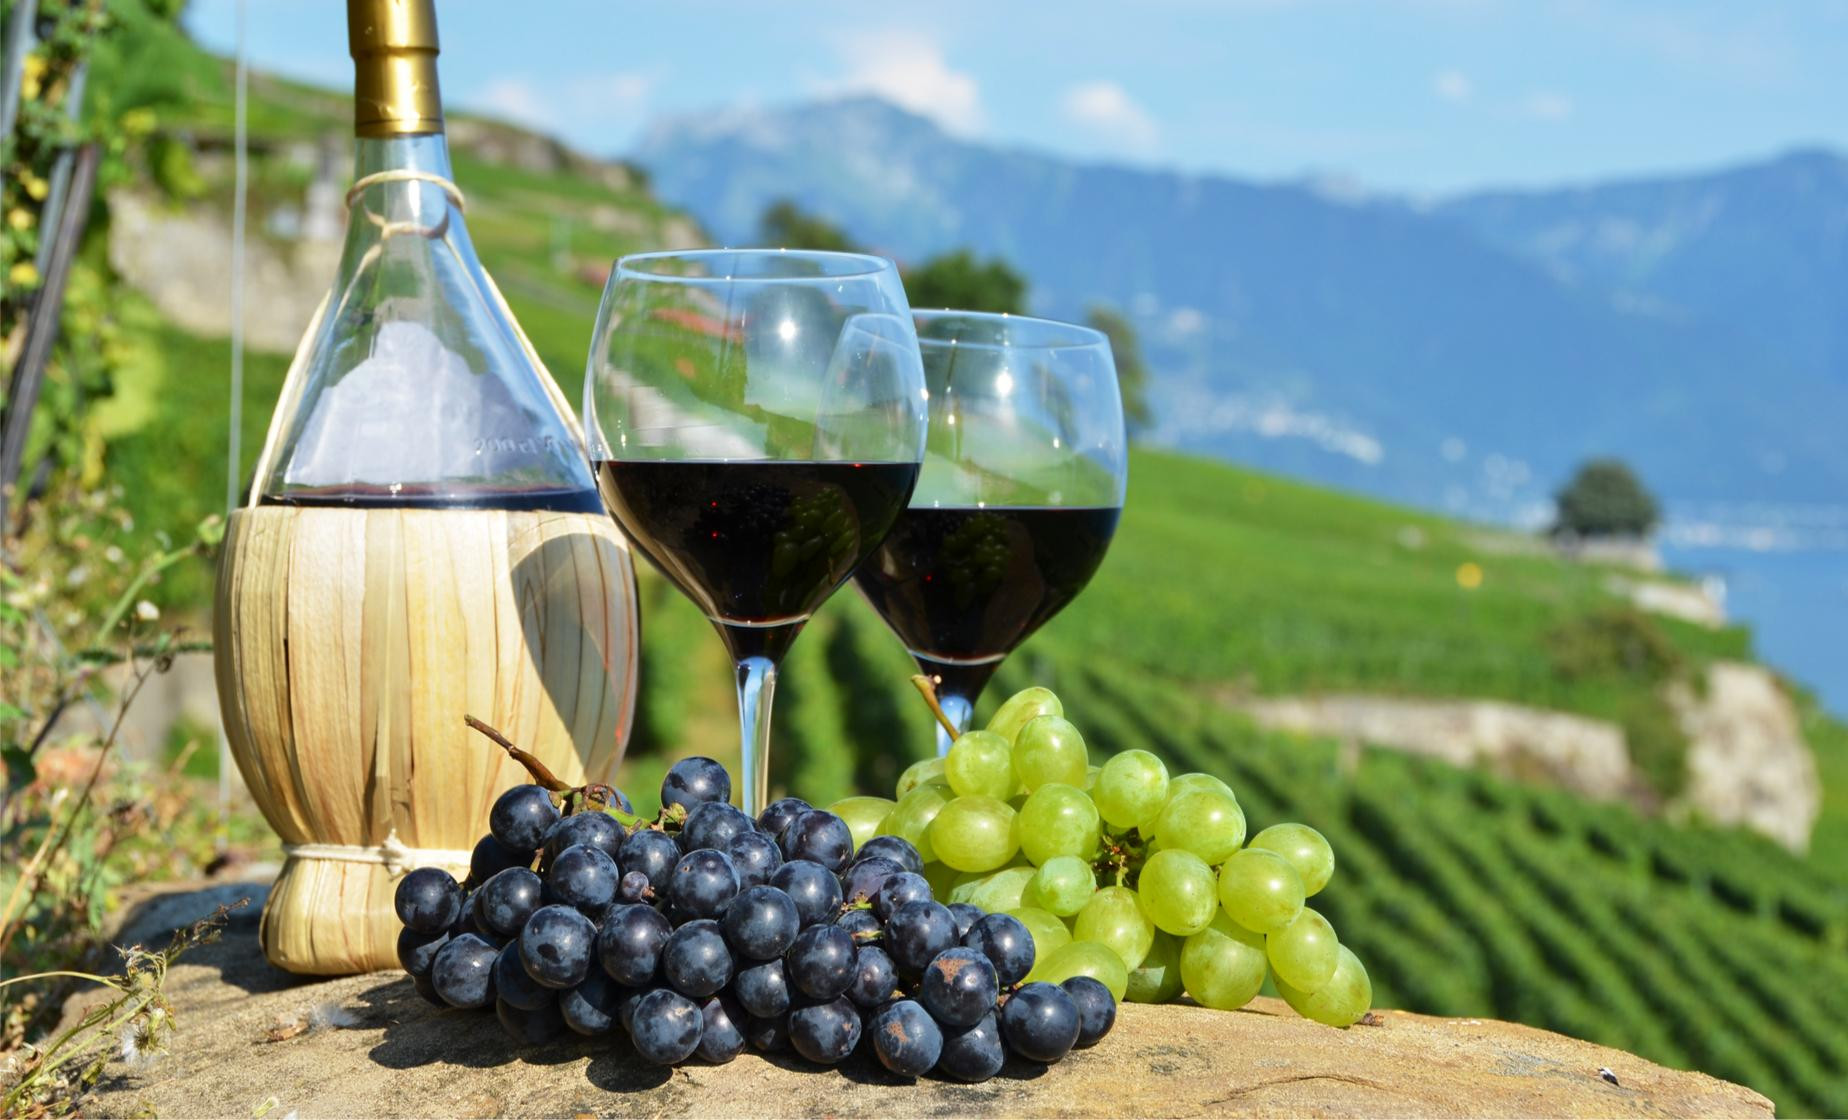 Rượu vang là sản phẩm nổi tiếng và đặc trưng của Tuscany